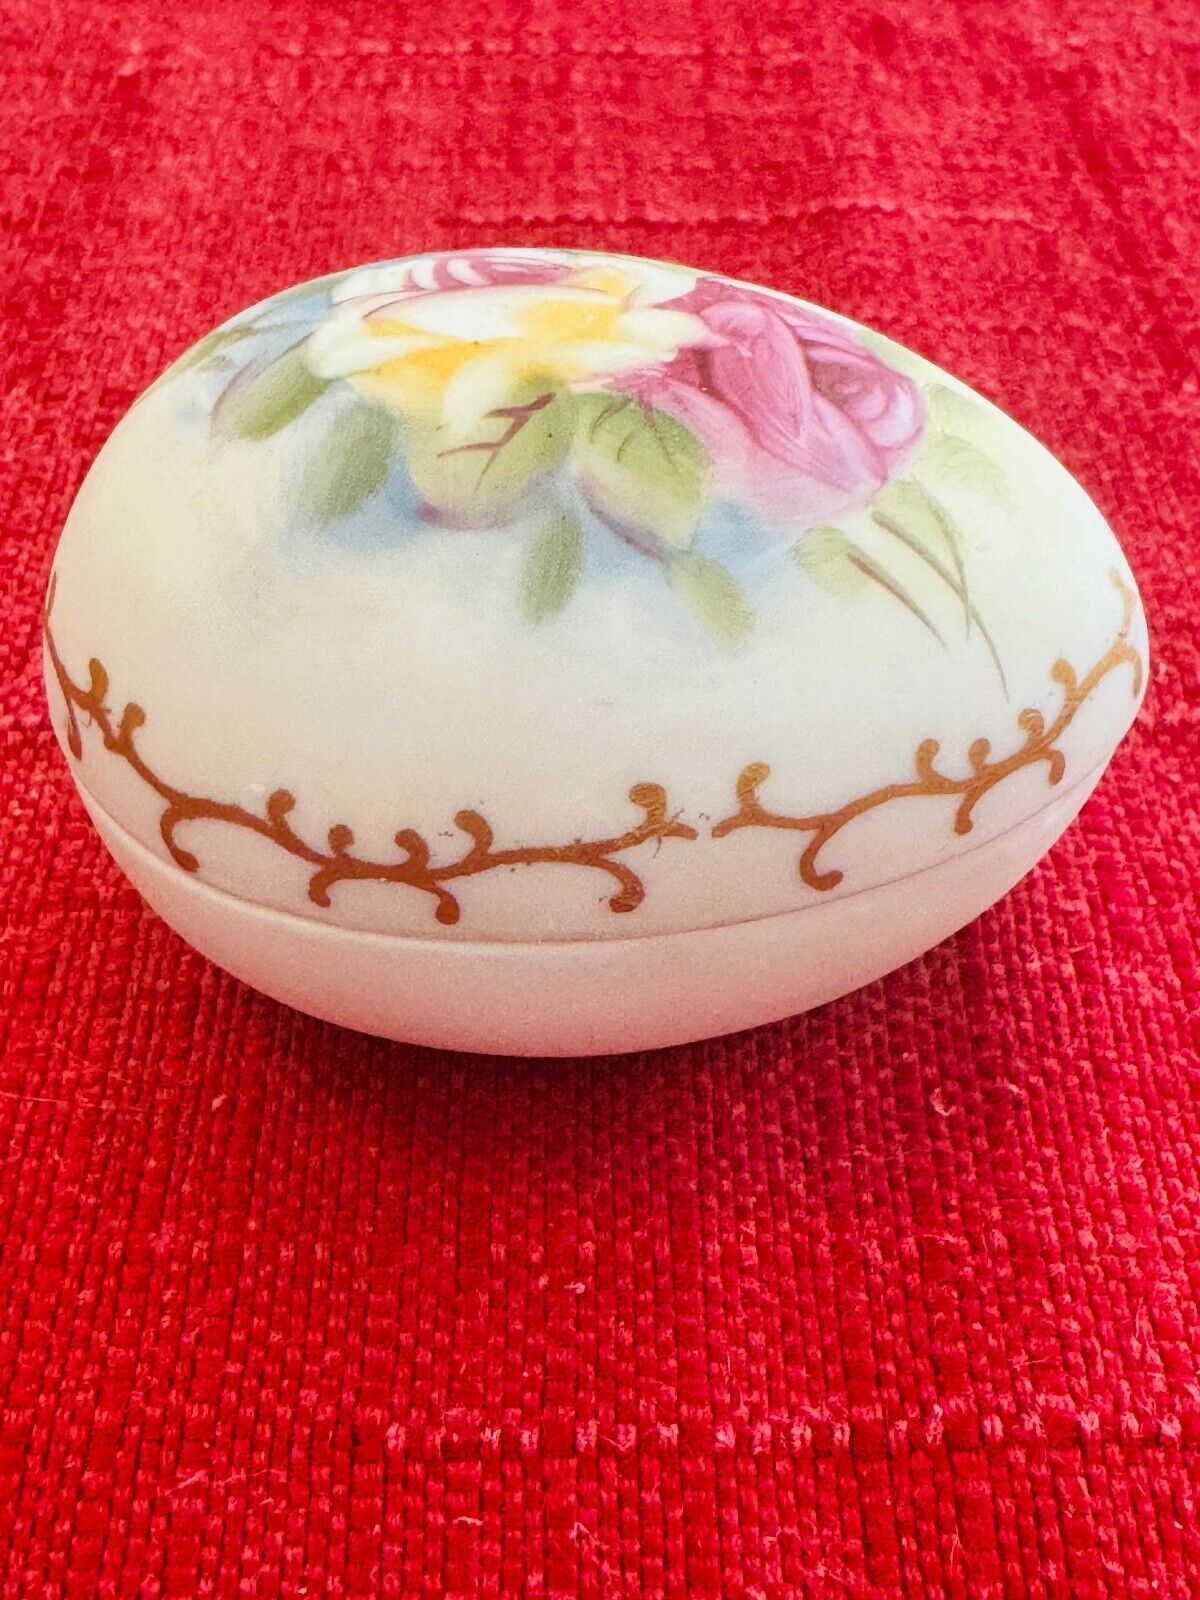 Vintage Lefton Hand-Painted Bisque Porcelain Egg Trinket Box